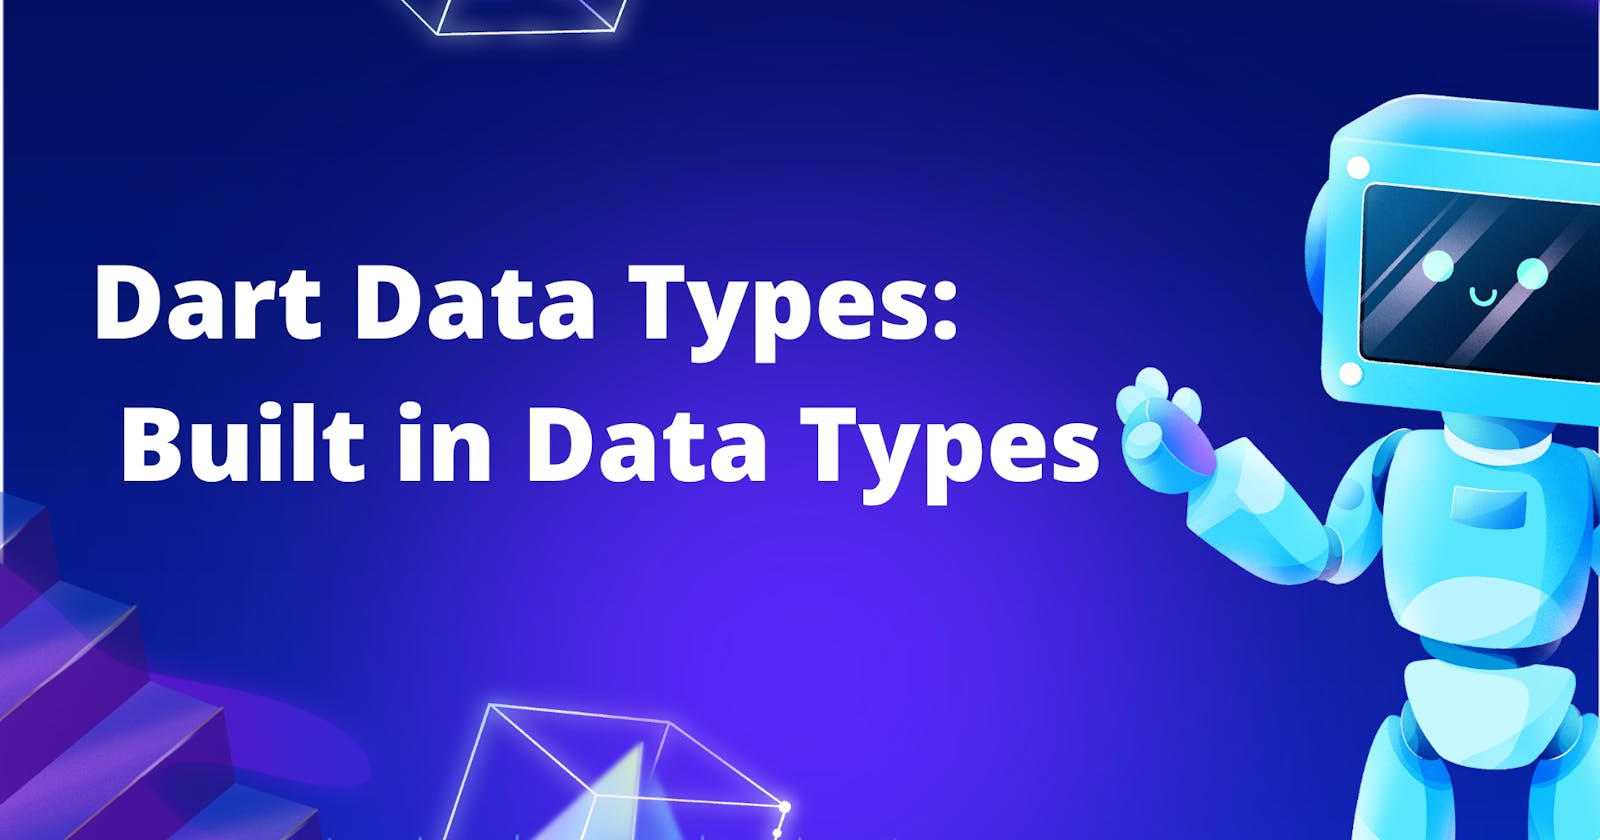 Dart Data Types: Built in Data Types